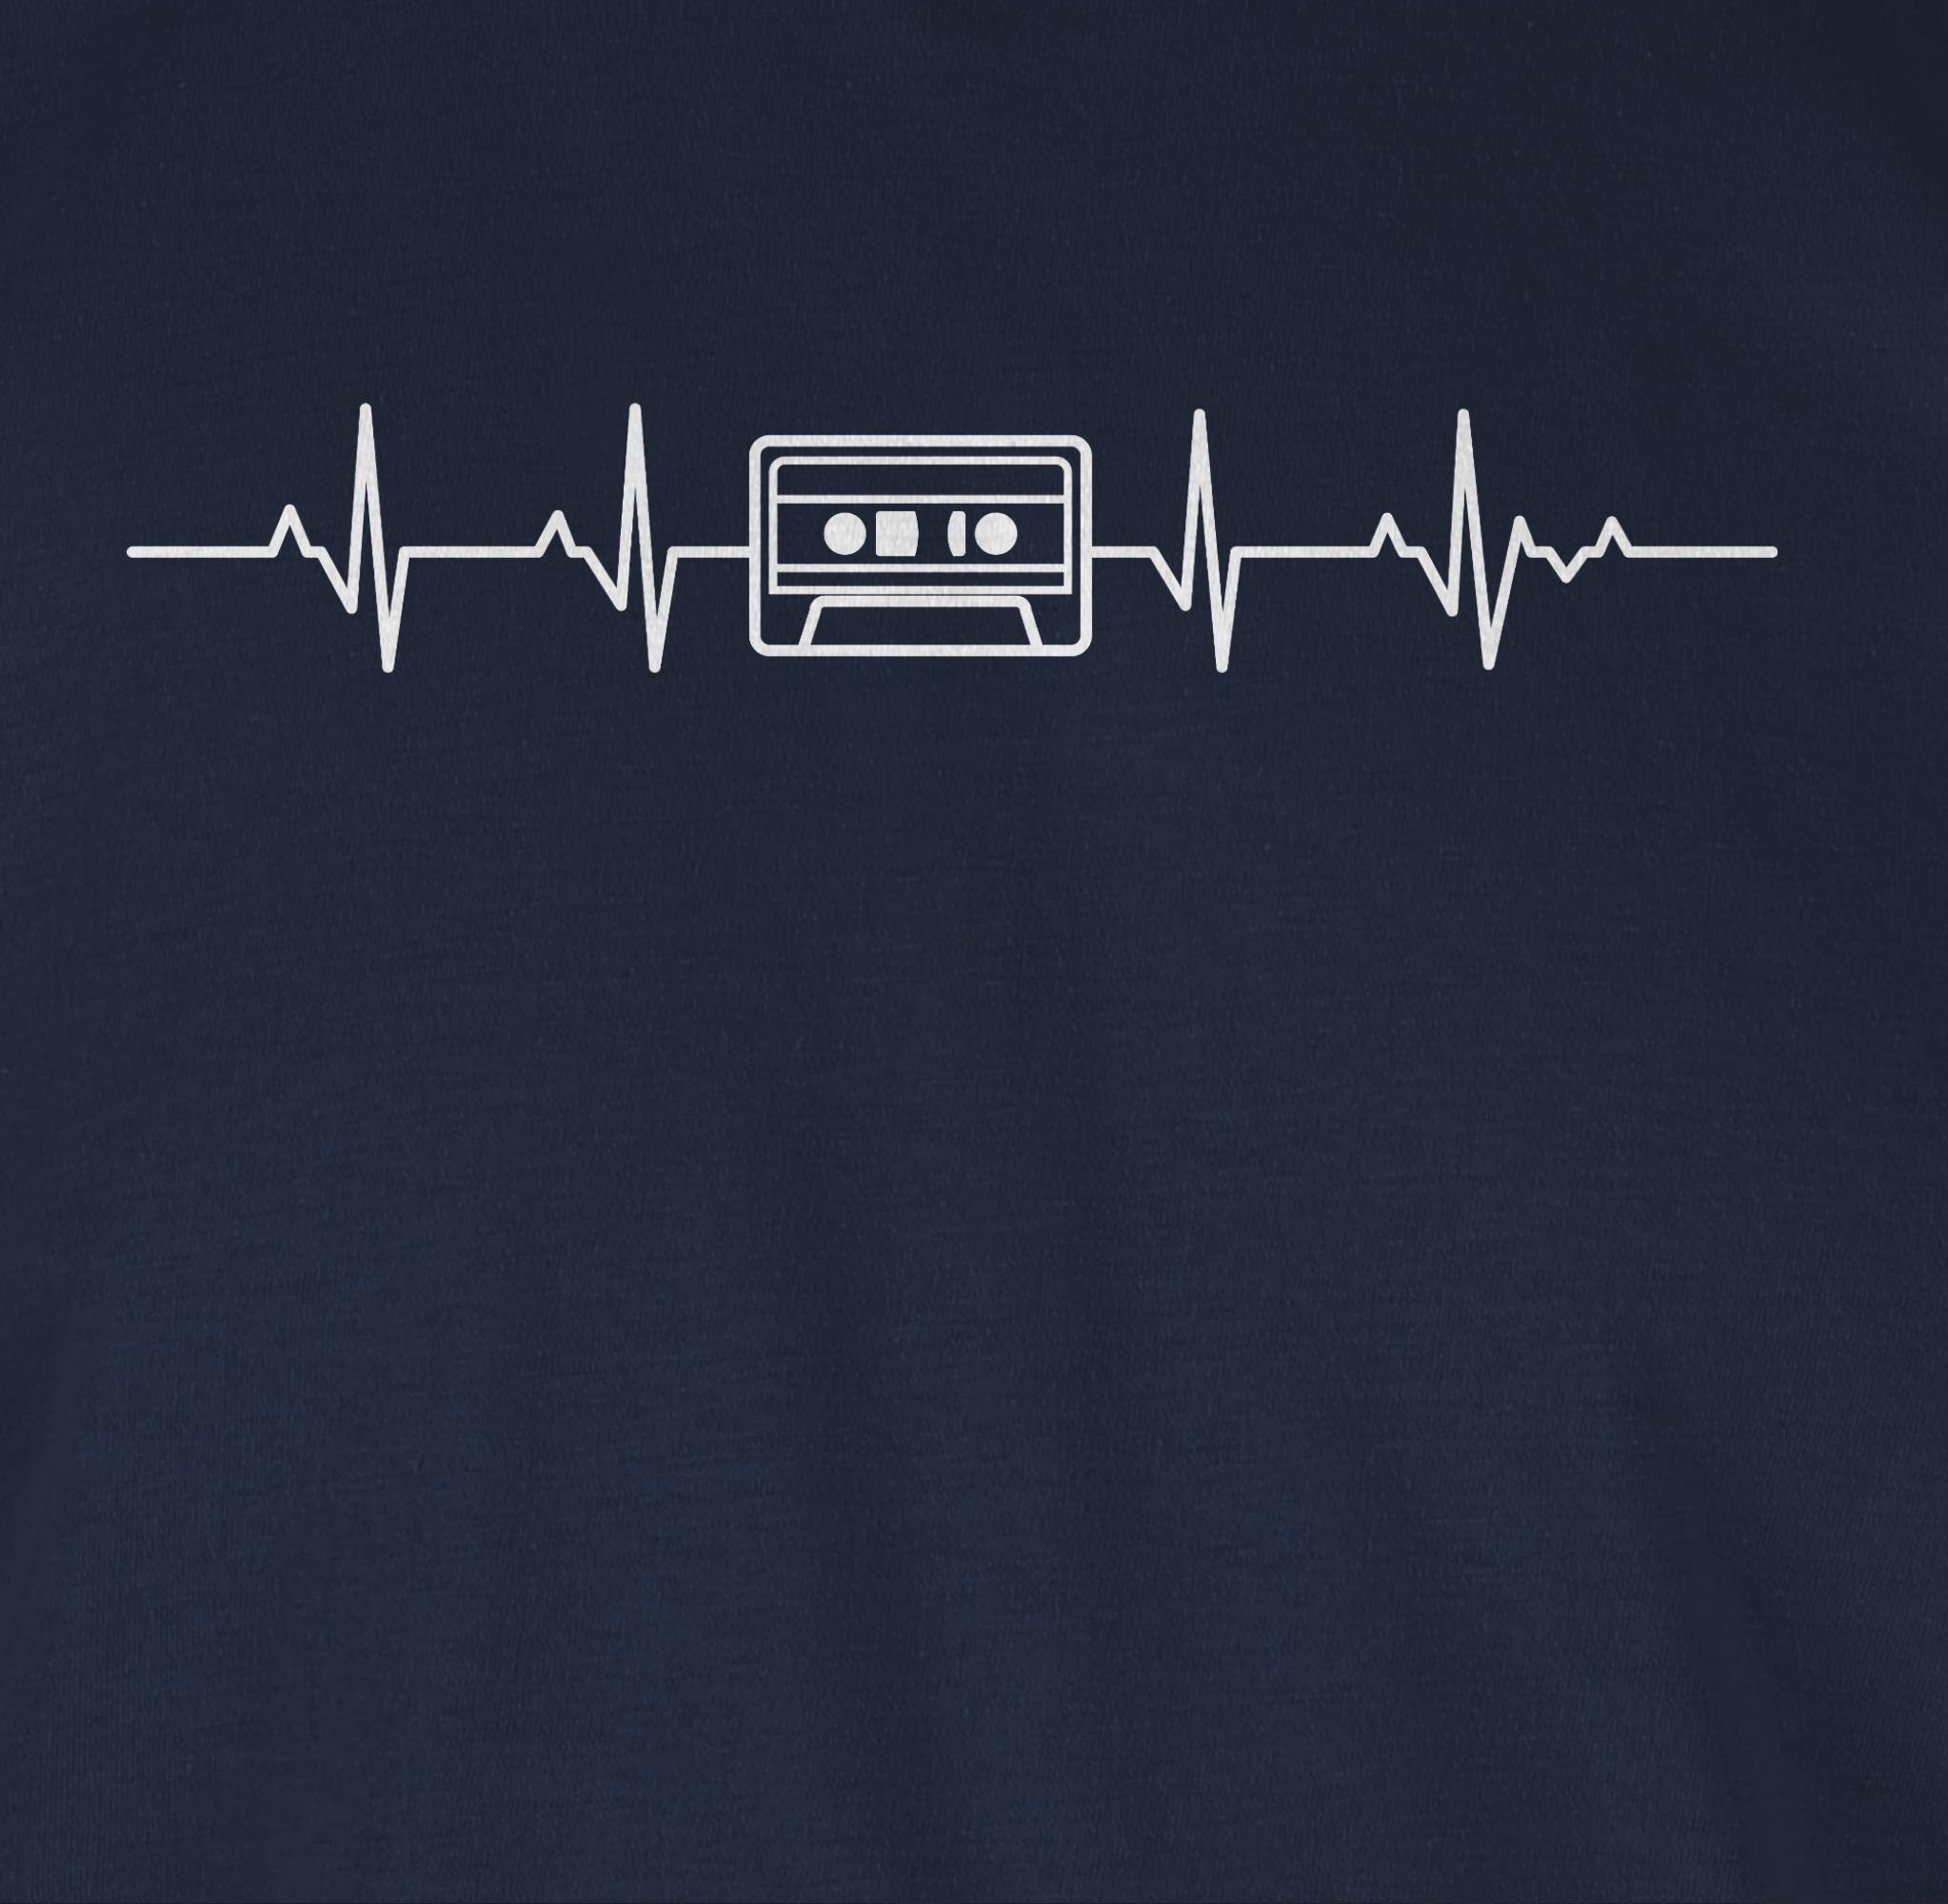 Shirtracer T-Shirt Herzschlag 03 Blau Symbol und Navy Outfit Kassette Zeichen